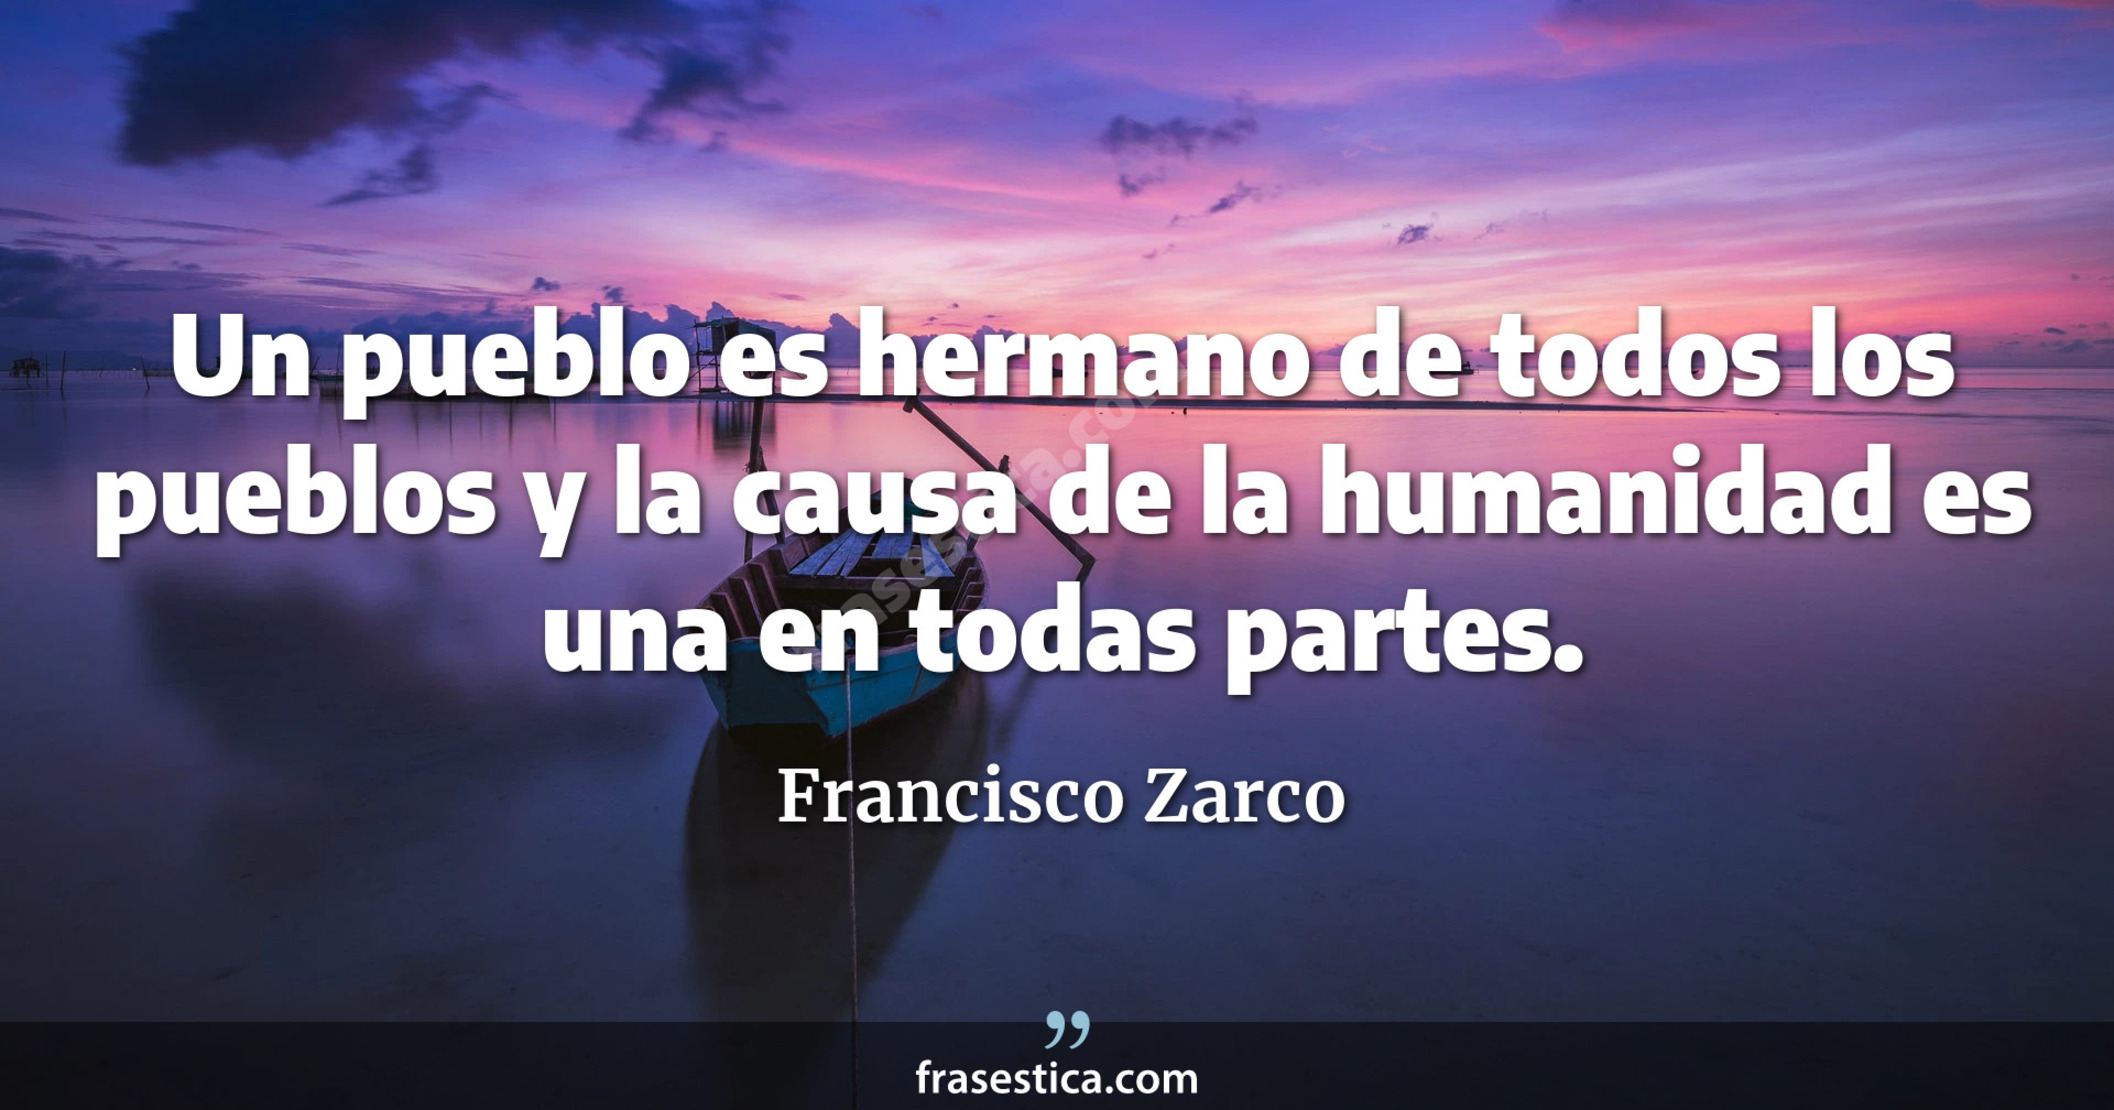 Un pueblo es hermano de todos los pueblos y la causa de la humanidad es una en todas partes. - Francisco Zarco